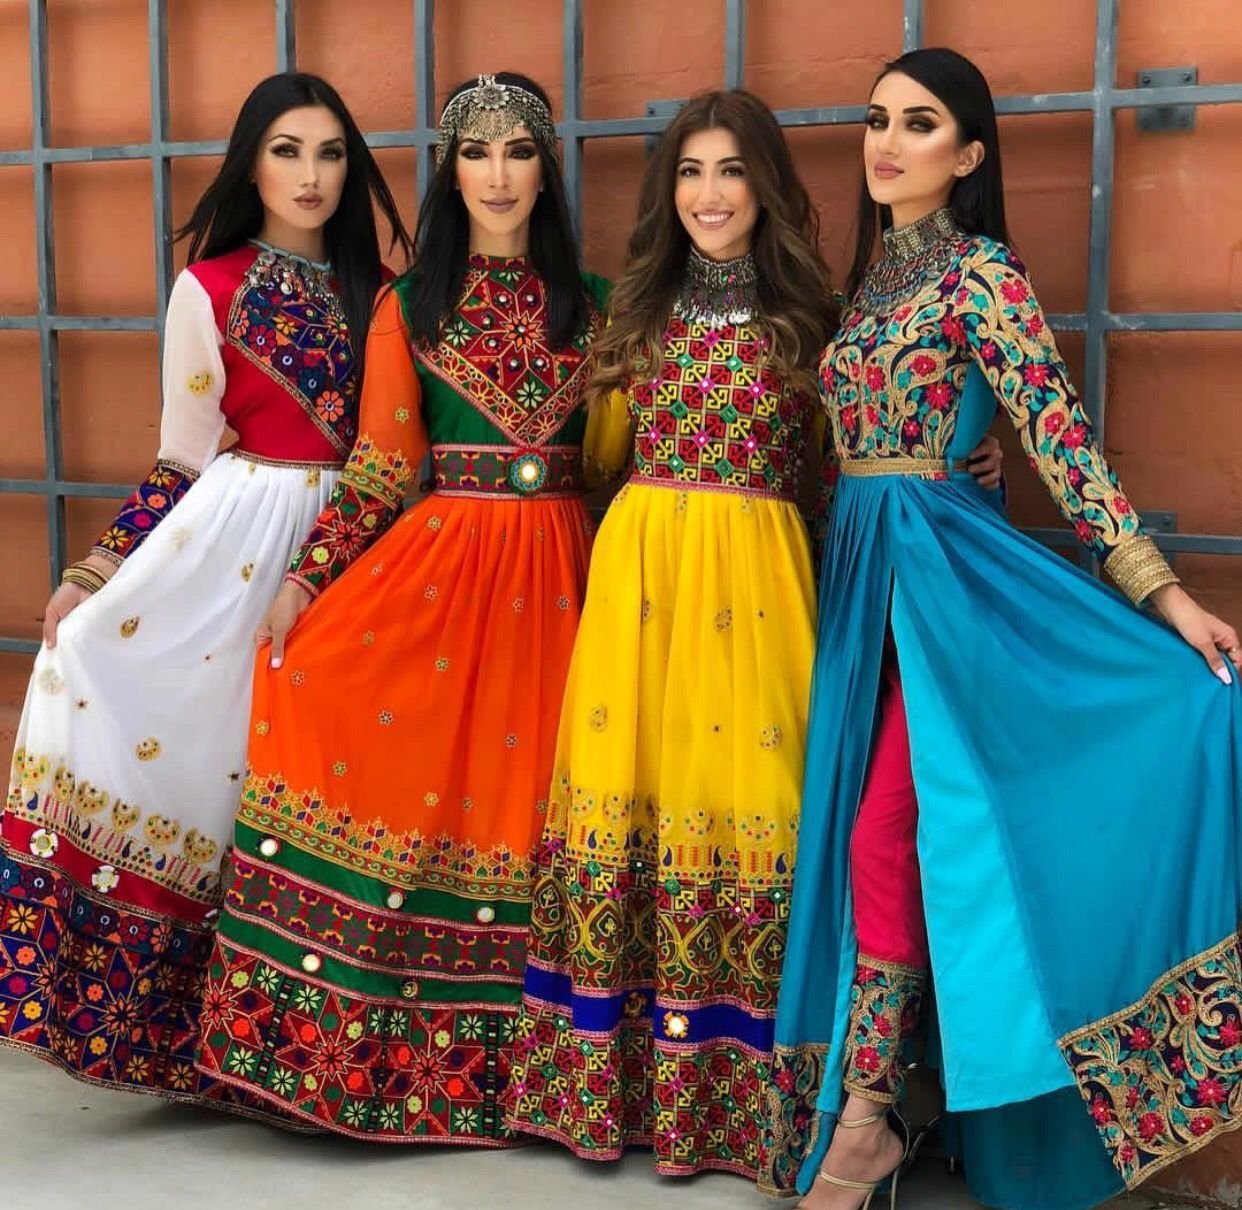 Афганская одежда. Платье в цыганском стиле. Афганские платья. Костюмы в цыганском стиле женские. Национальные платья.